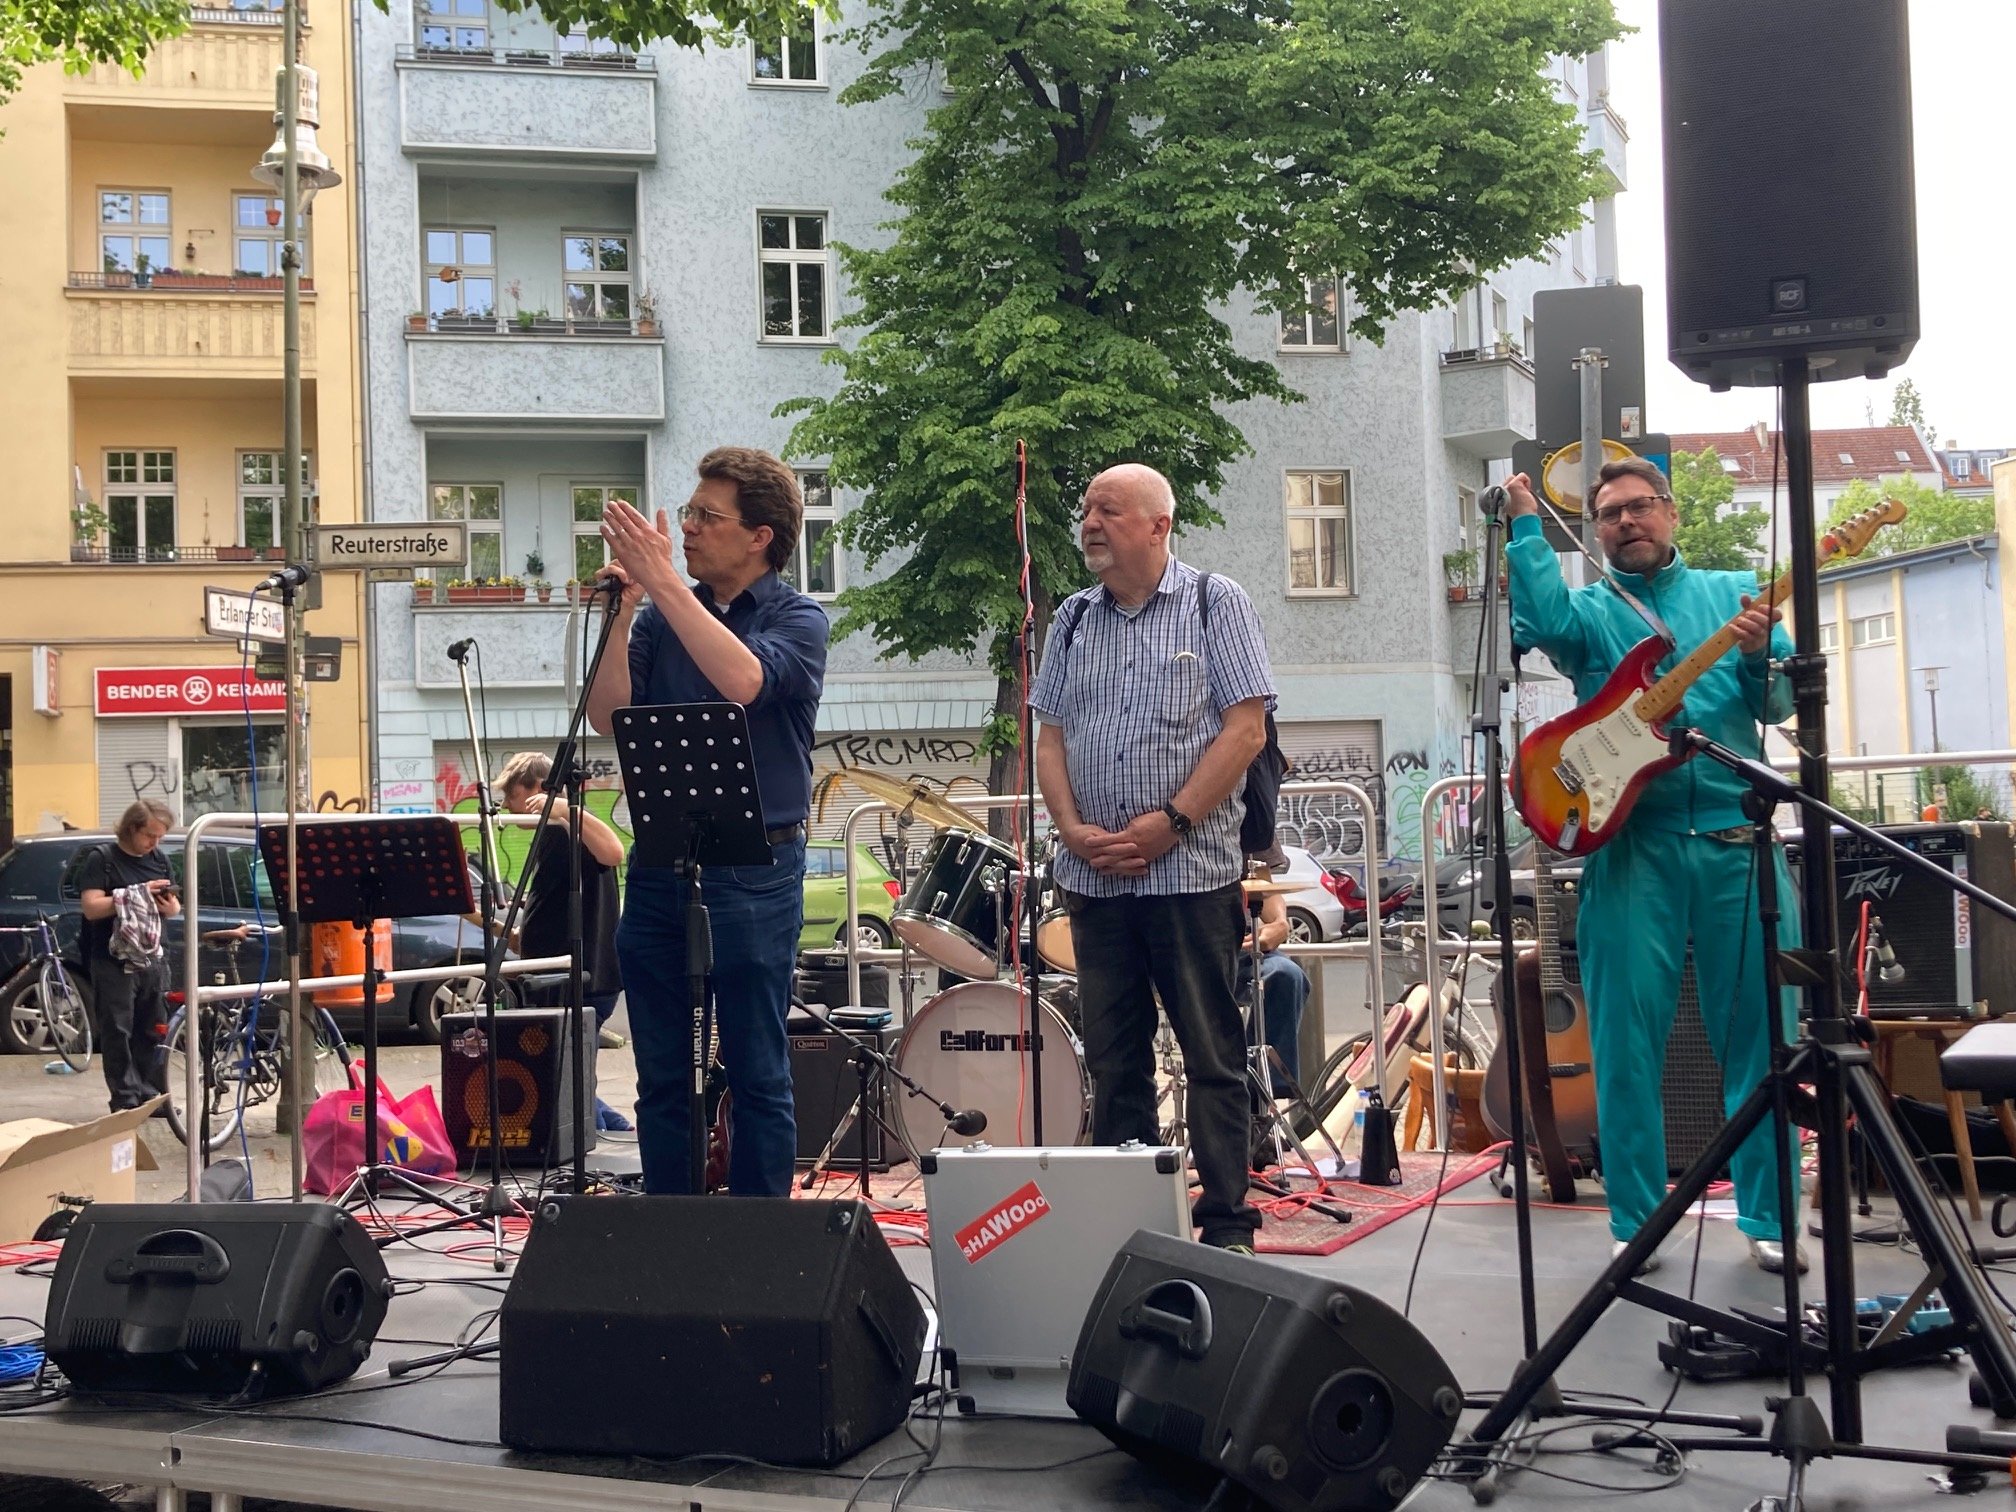 Auf der Bühne sorgten Rock- und Bluesbands für Unterhaltung und gute Stimmung beim Kiezfest. (Bild: QM Flughafenstraße)